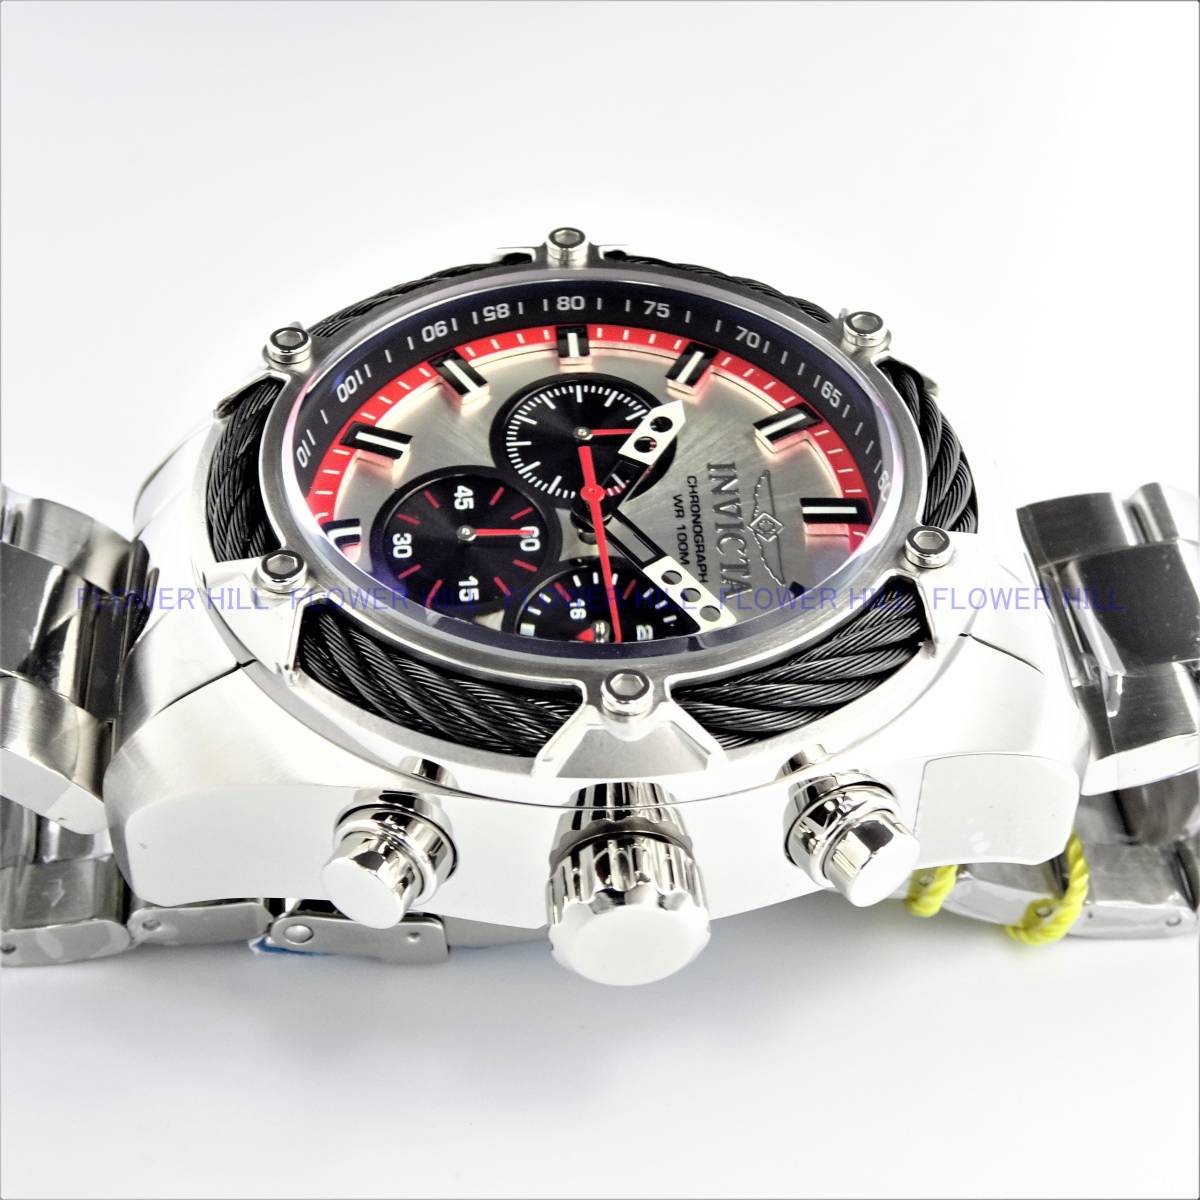 【新品・送料無料】インビクタ INVICTA 腕時計 ボルト BOLT 31435 クォーツ クロノグラフ カレンダー 大人気シリーズ